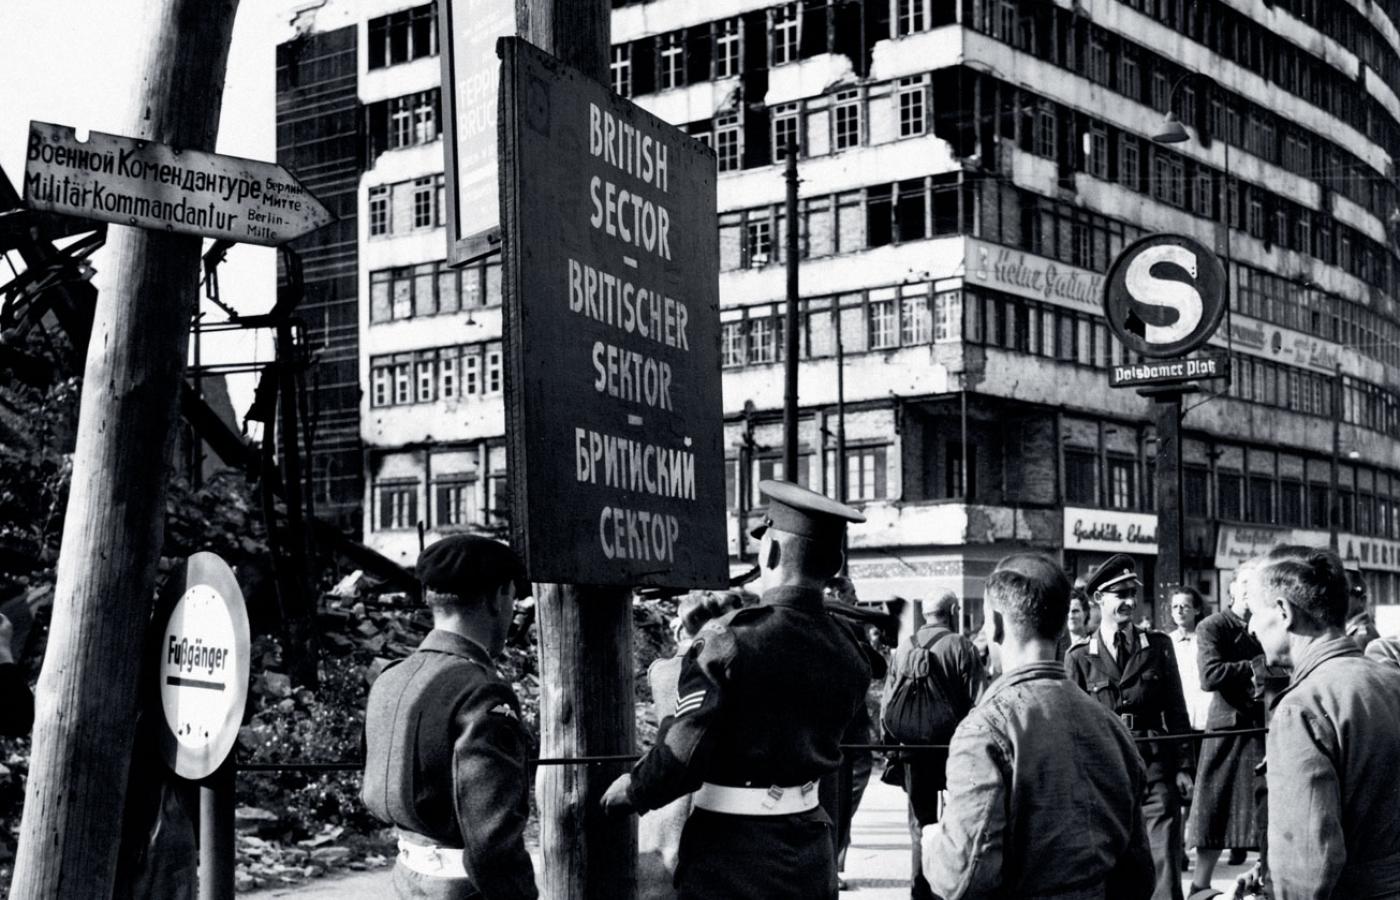 Przejście na granicy sektorów brytyjskiego i sowieckiego w Berlinie, 1948 r.